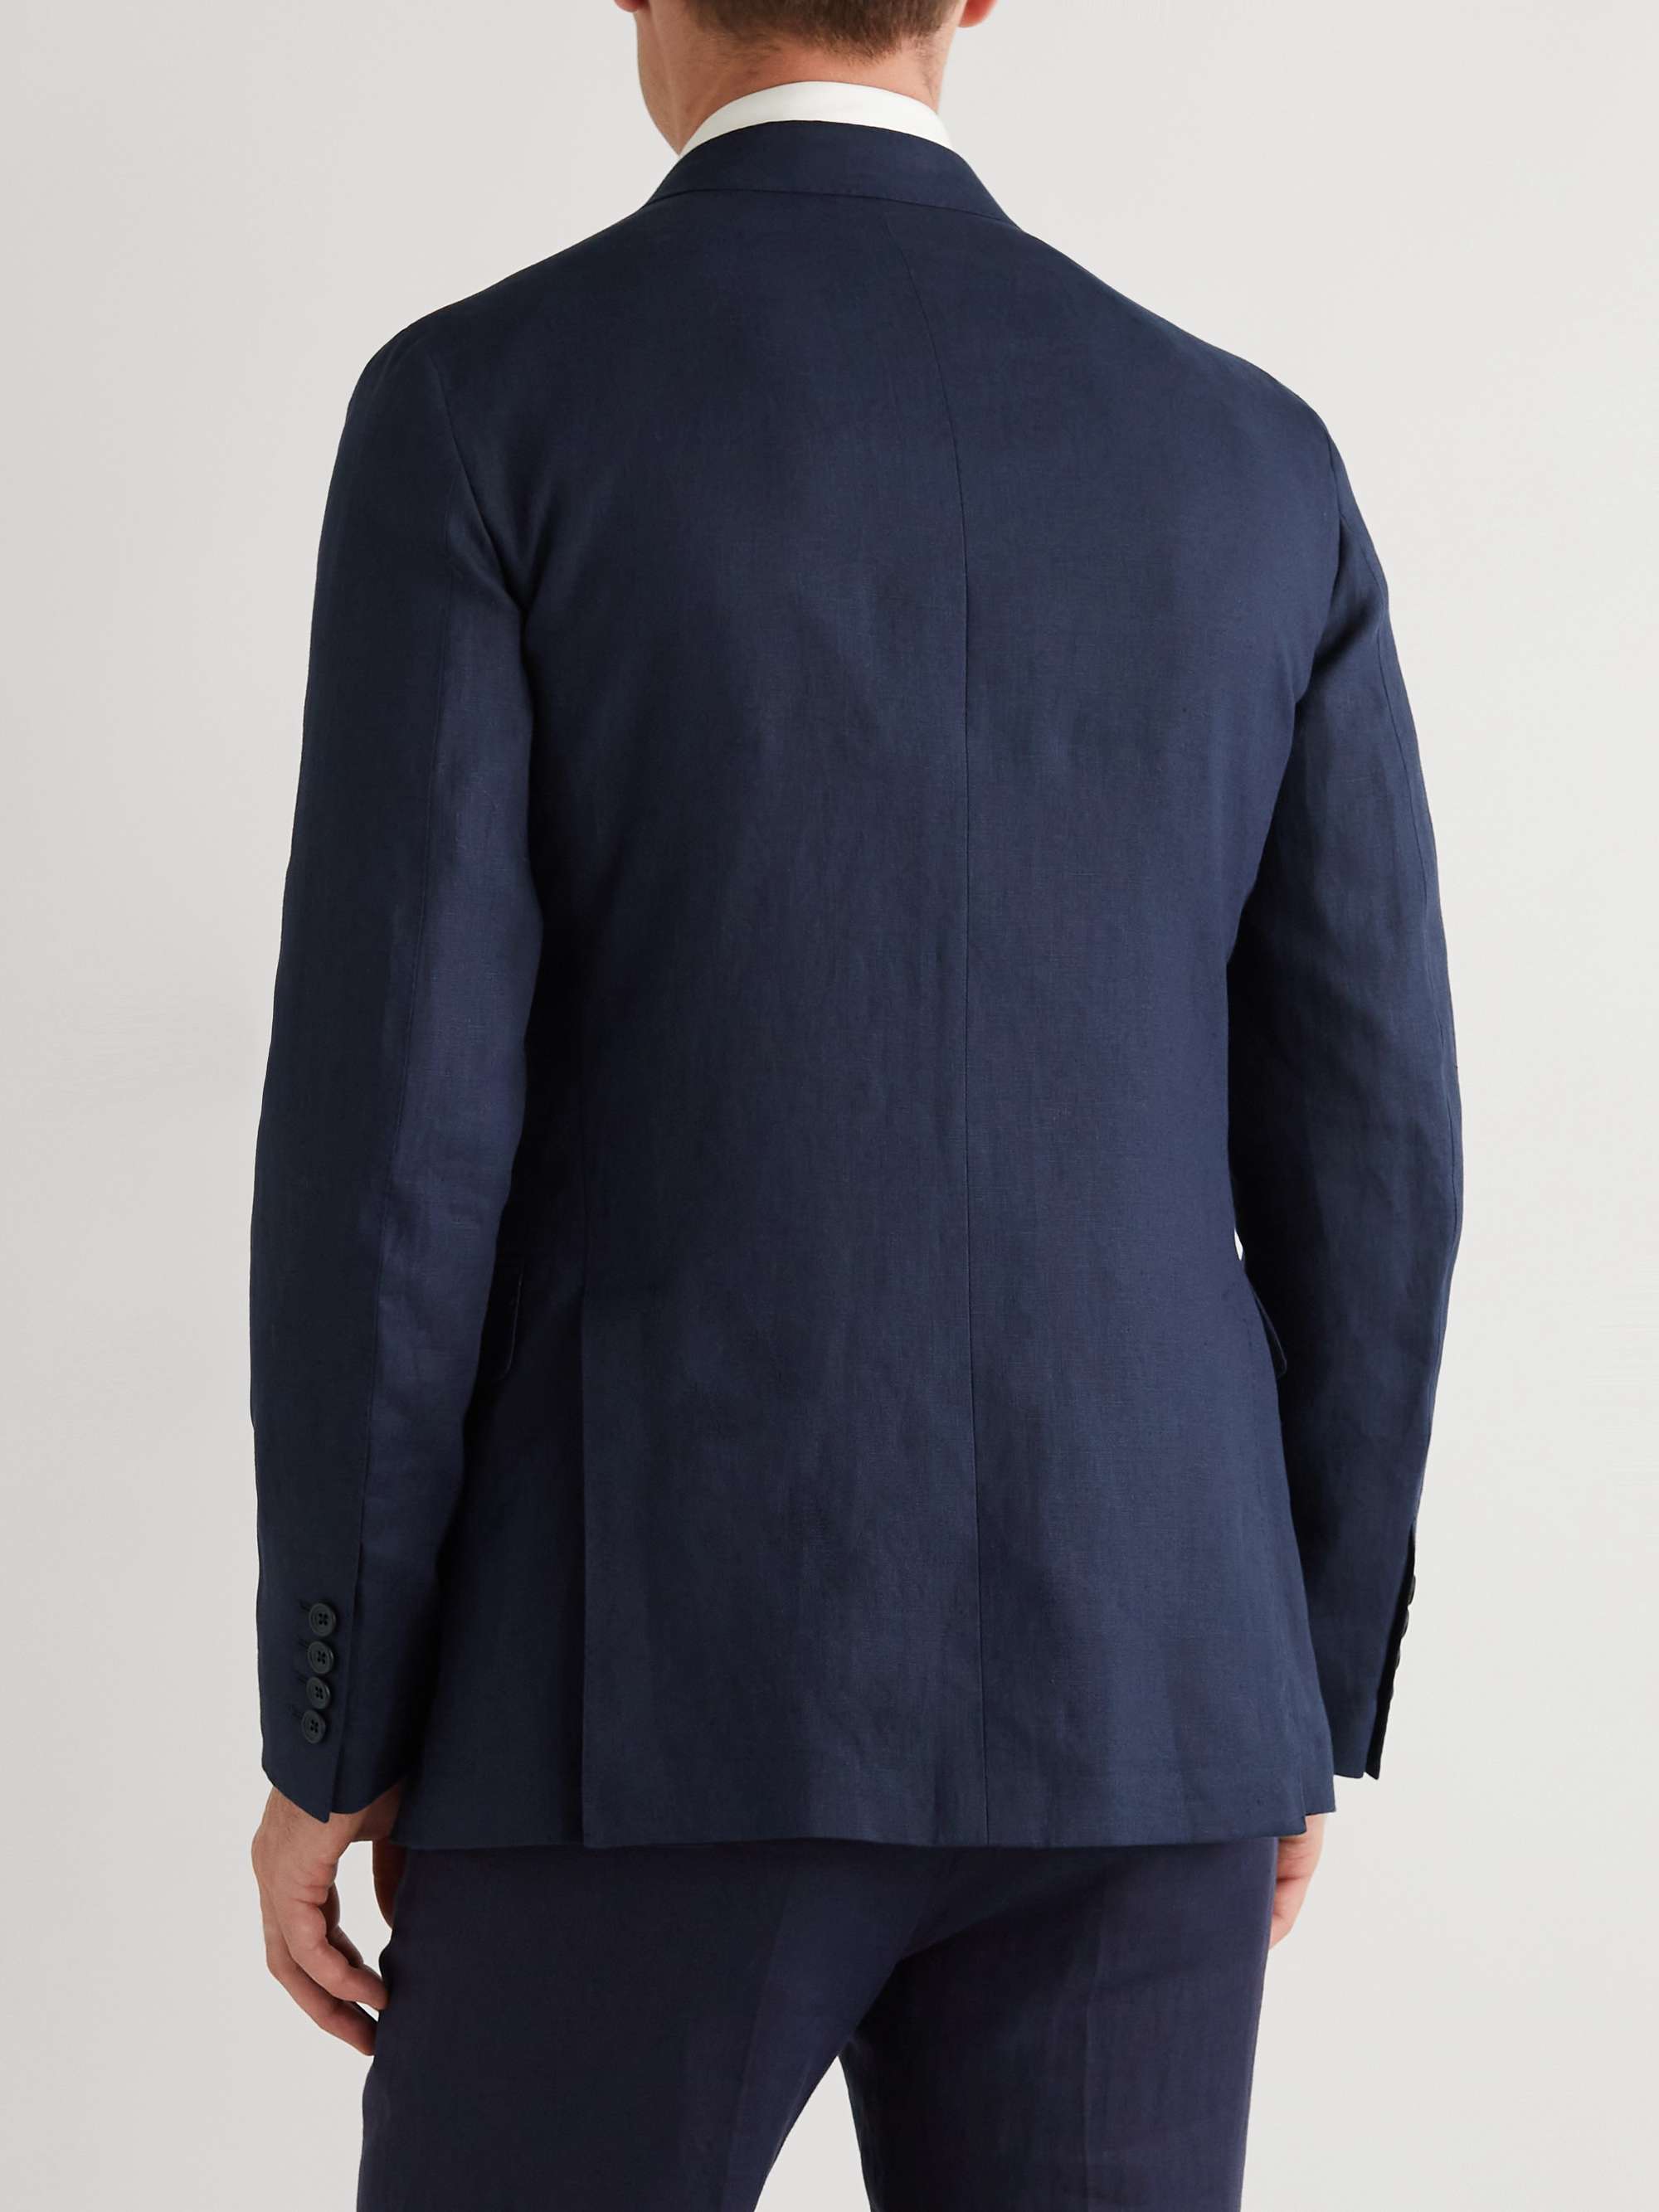 KINGSMAN Unconstructed Linen Suit Jacket